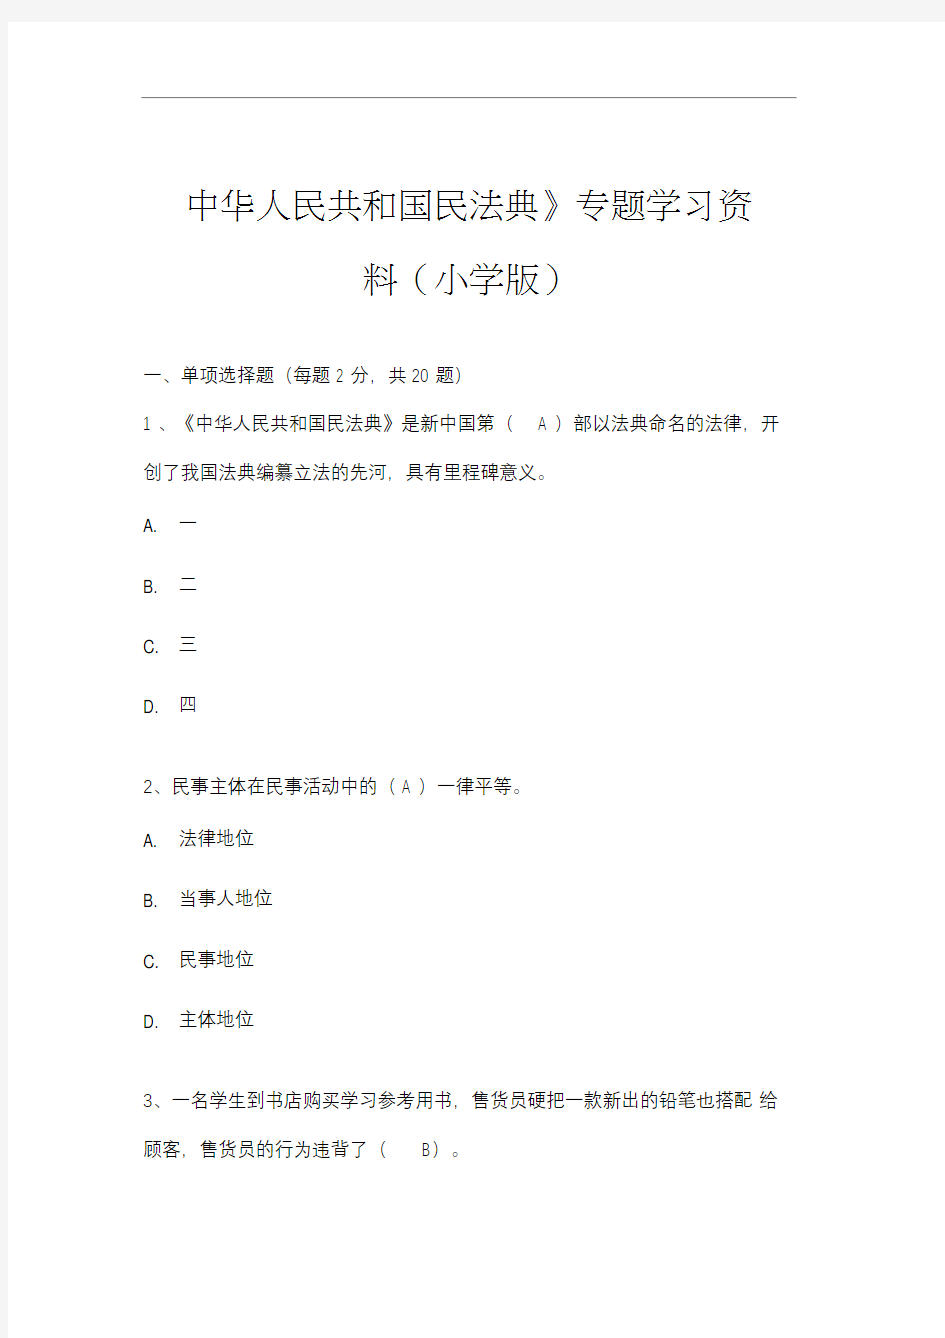 《中华人民共和国民法典》专题学习资料(小学版)